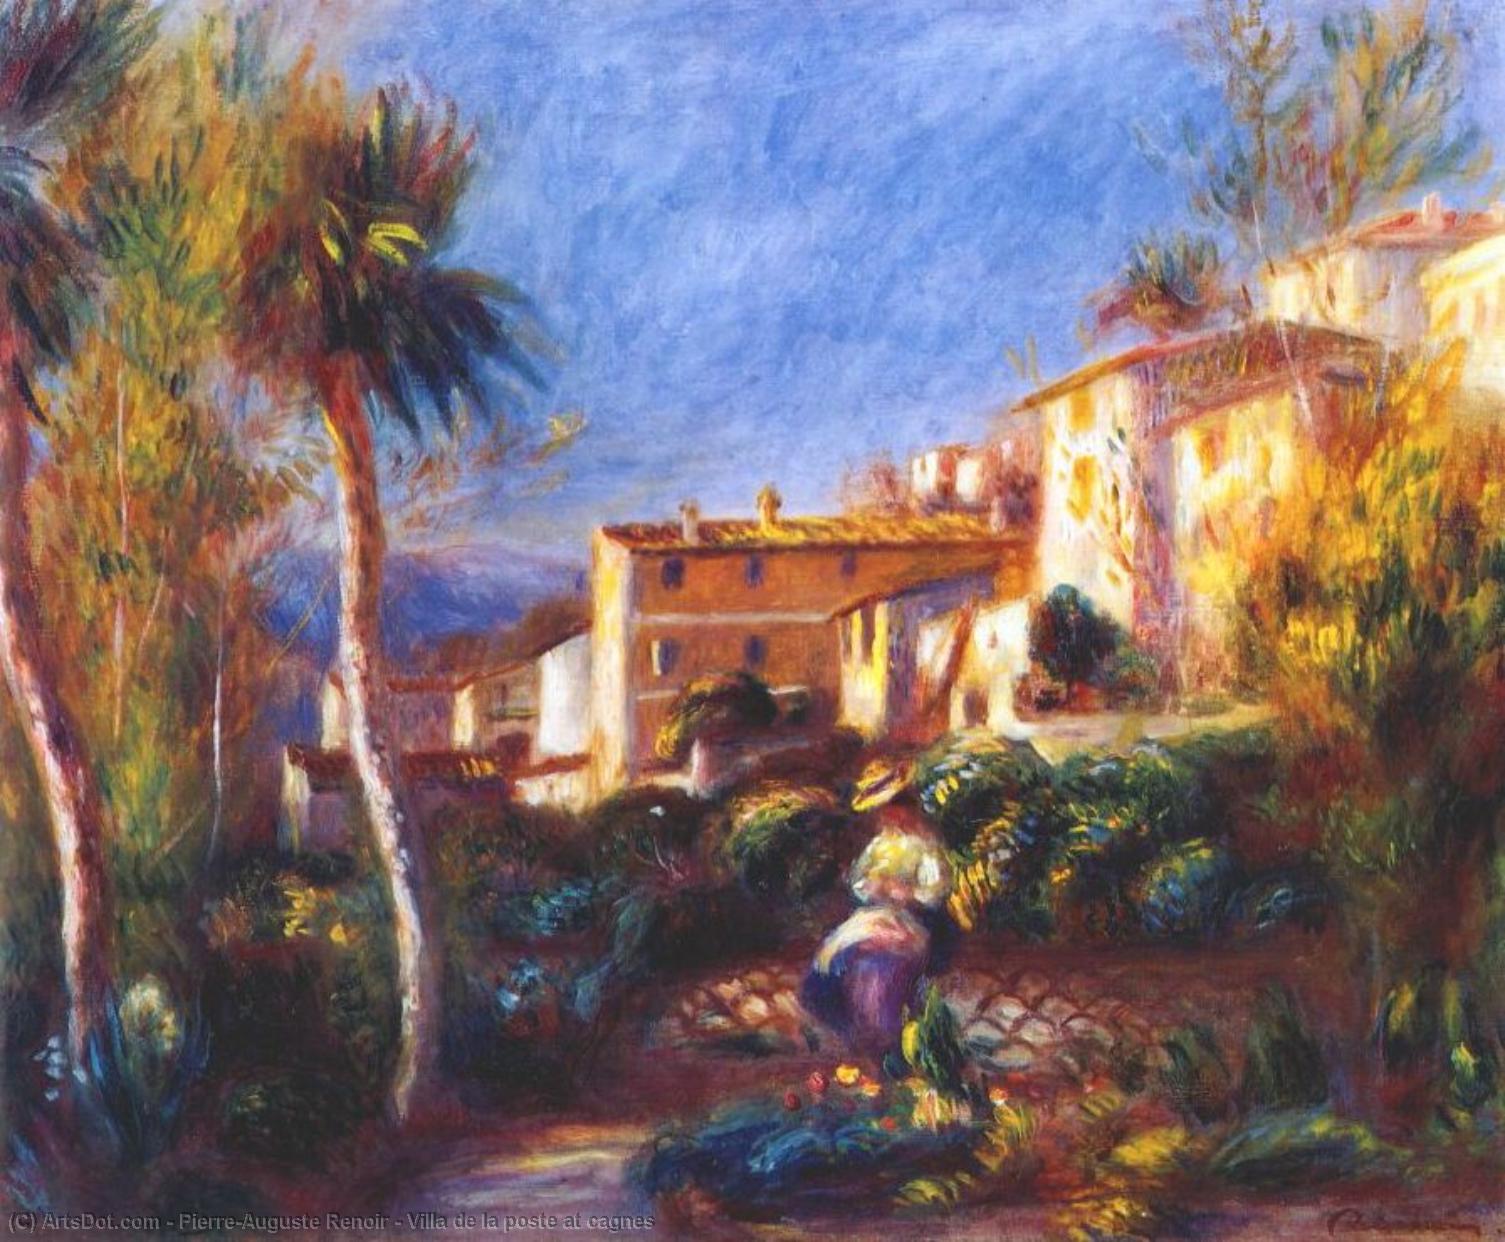 WikiOO.org - Enciclopédia das Belas Artes - Pintura, Arte por Pierre-Auguste Renoir - Villa de la poste at cagnes